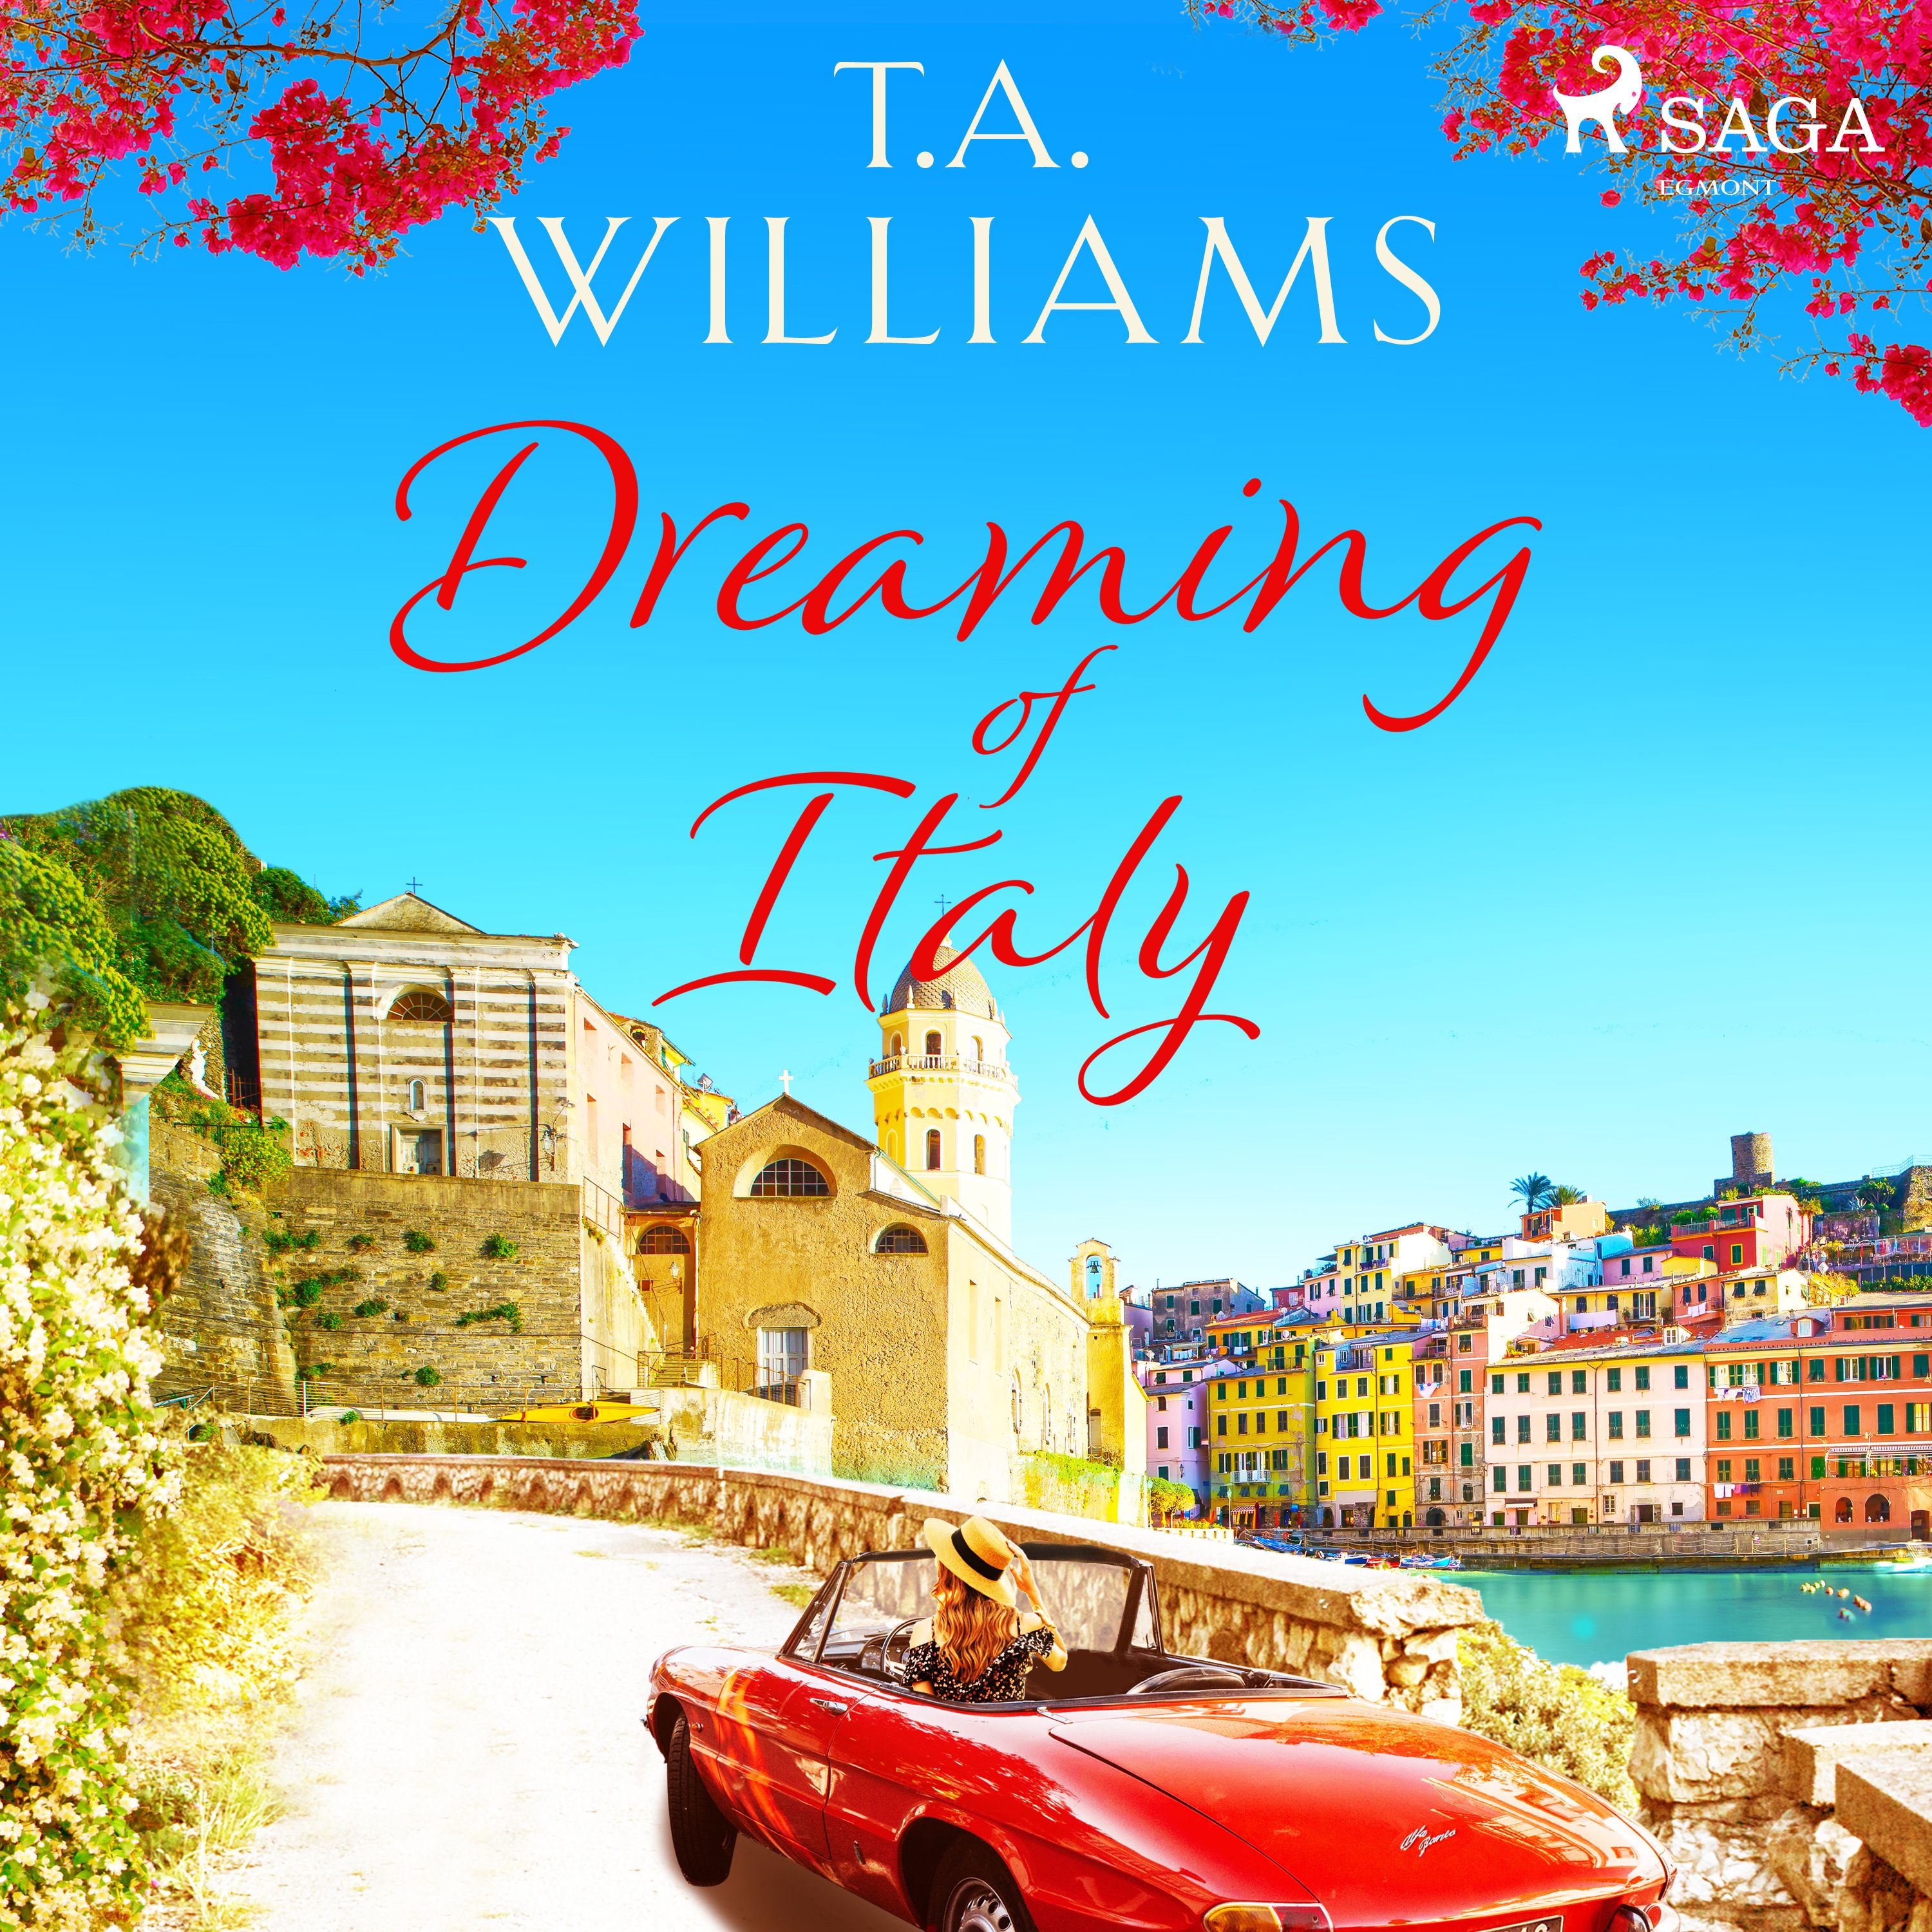 Dreaming of Italy, ljudbok av T.A. Williams